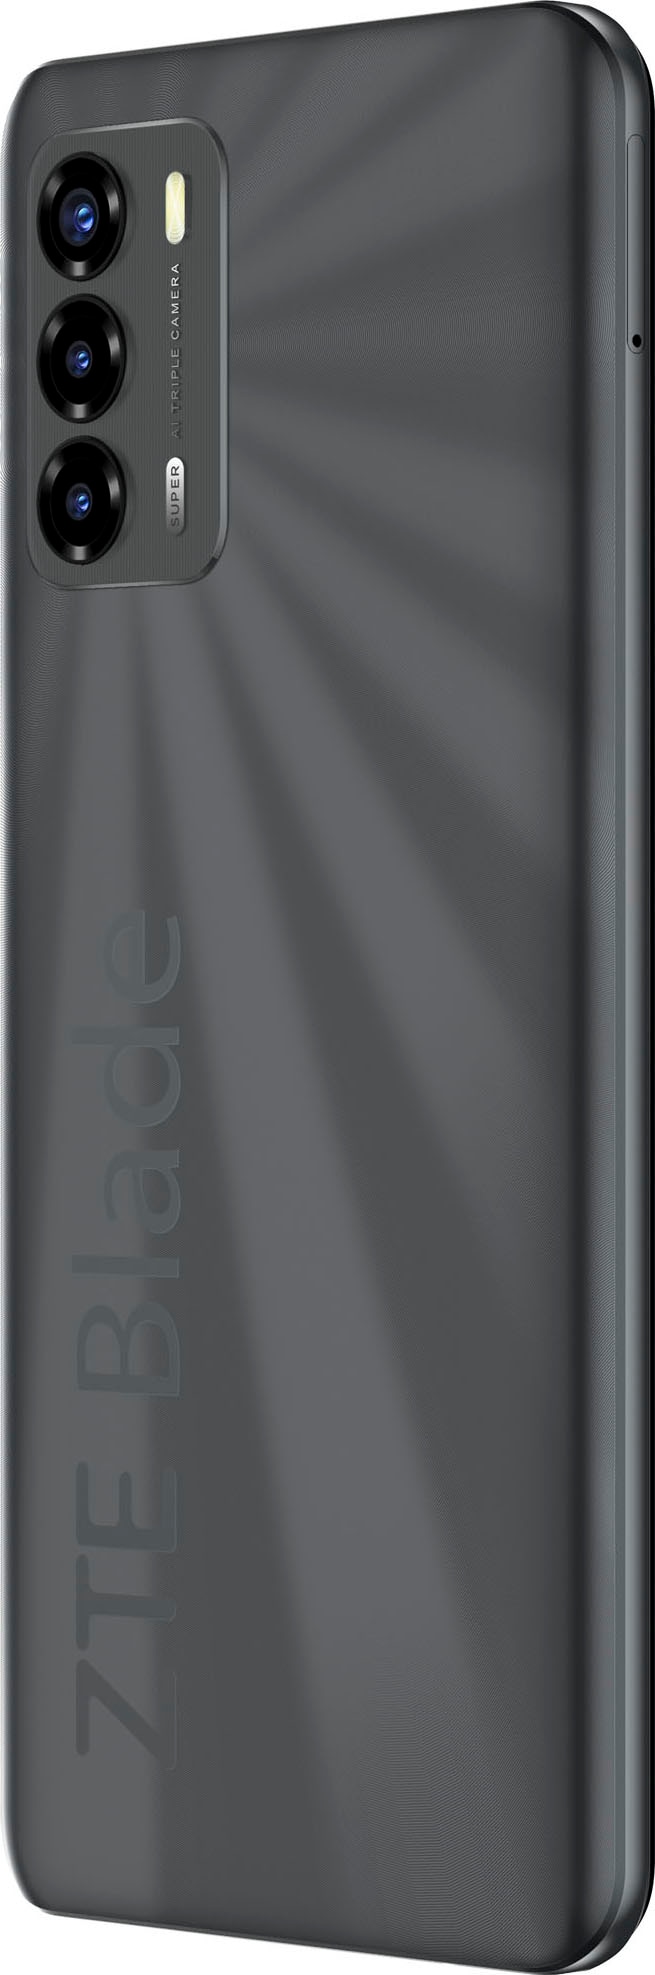 ZTE Smartphone »Blade V40 Vita«, schwarz, 17,1 cm/6,75 Zoll, 128 GB  Speicherplatz, 48 MP Kamera online kaufen | alle Smartphones